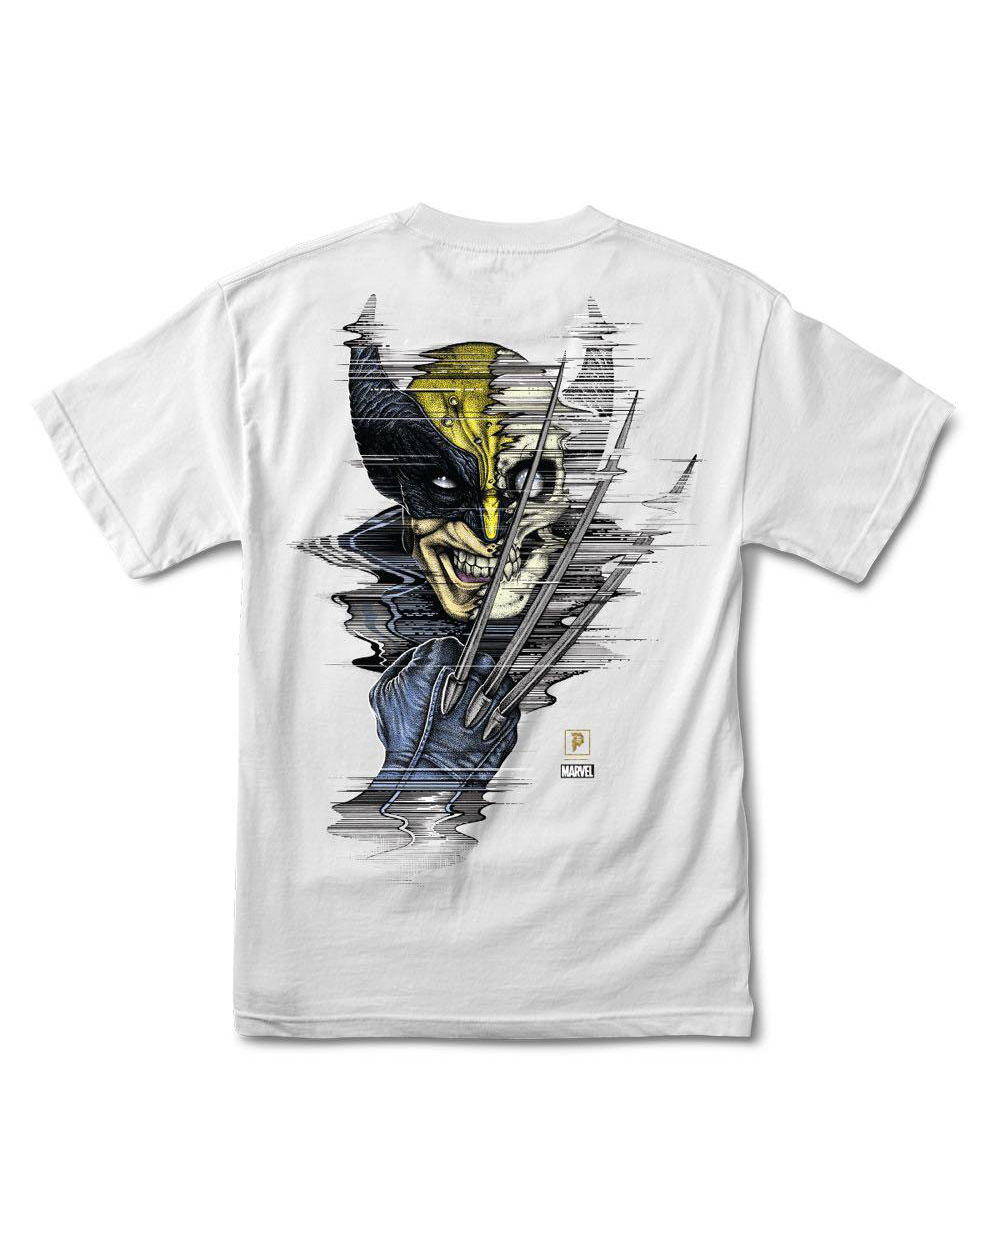 Primitive Paul Jackson x Marvel - Wolverine Camiseta para Homem White